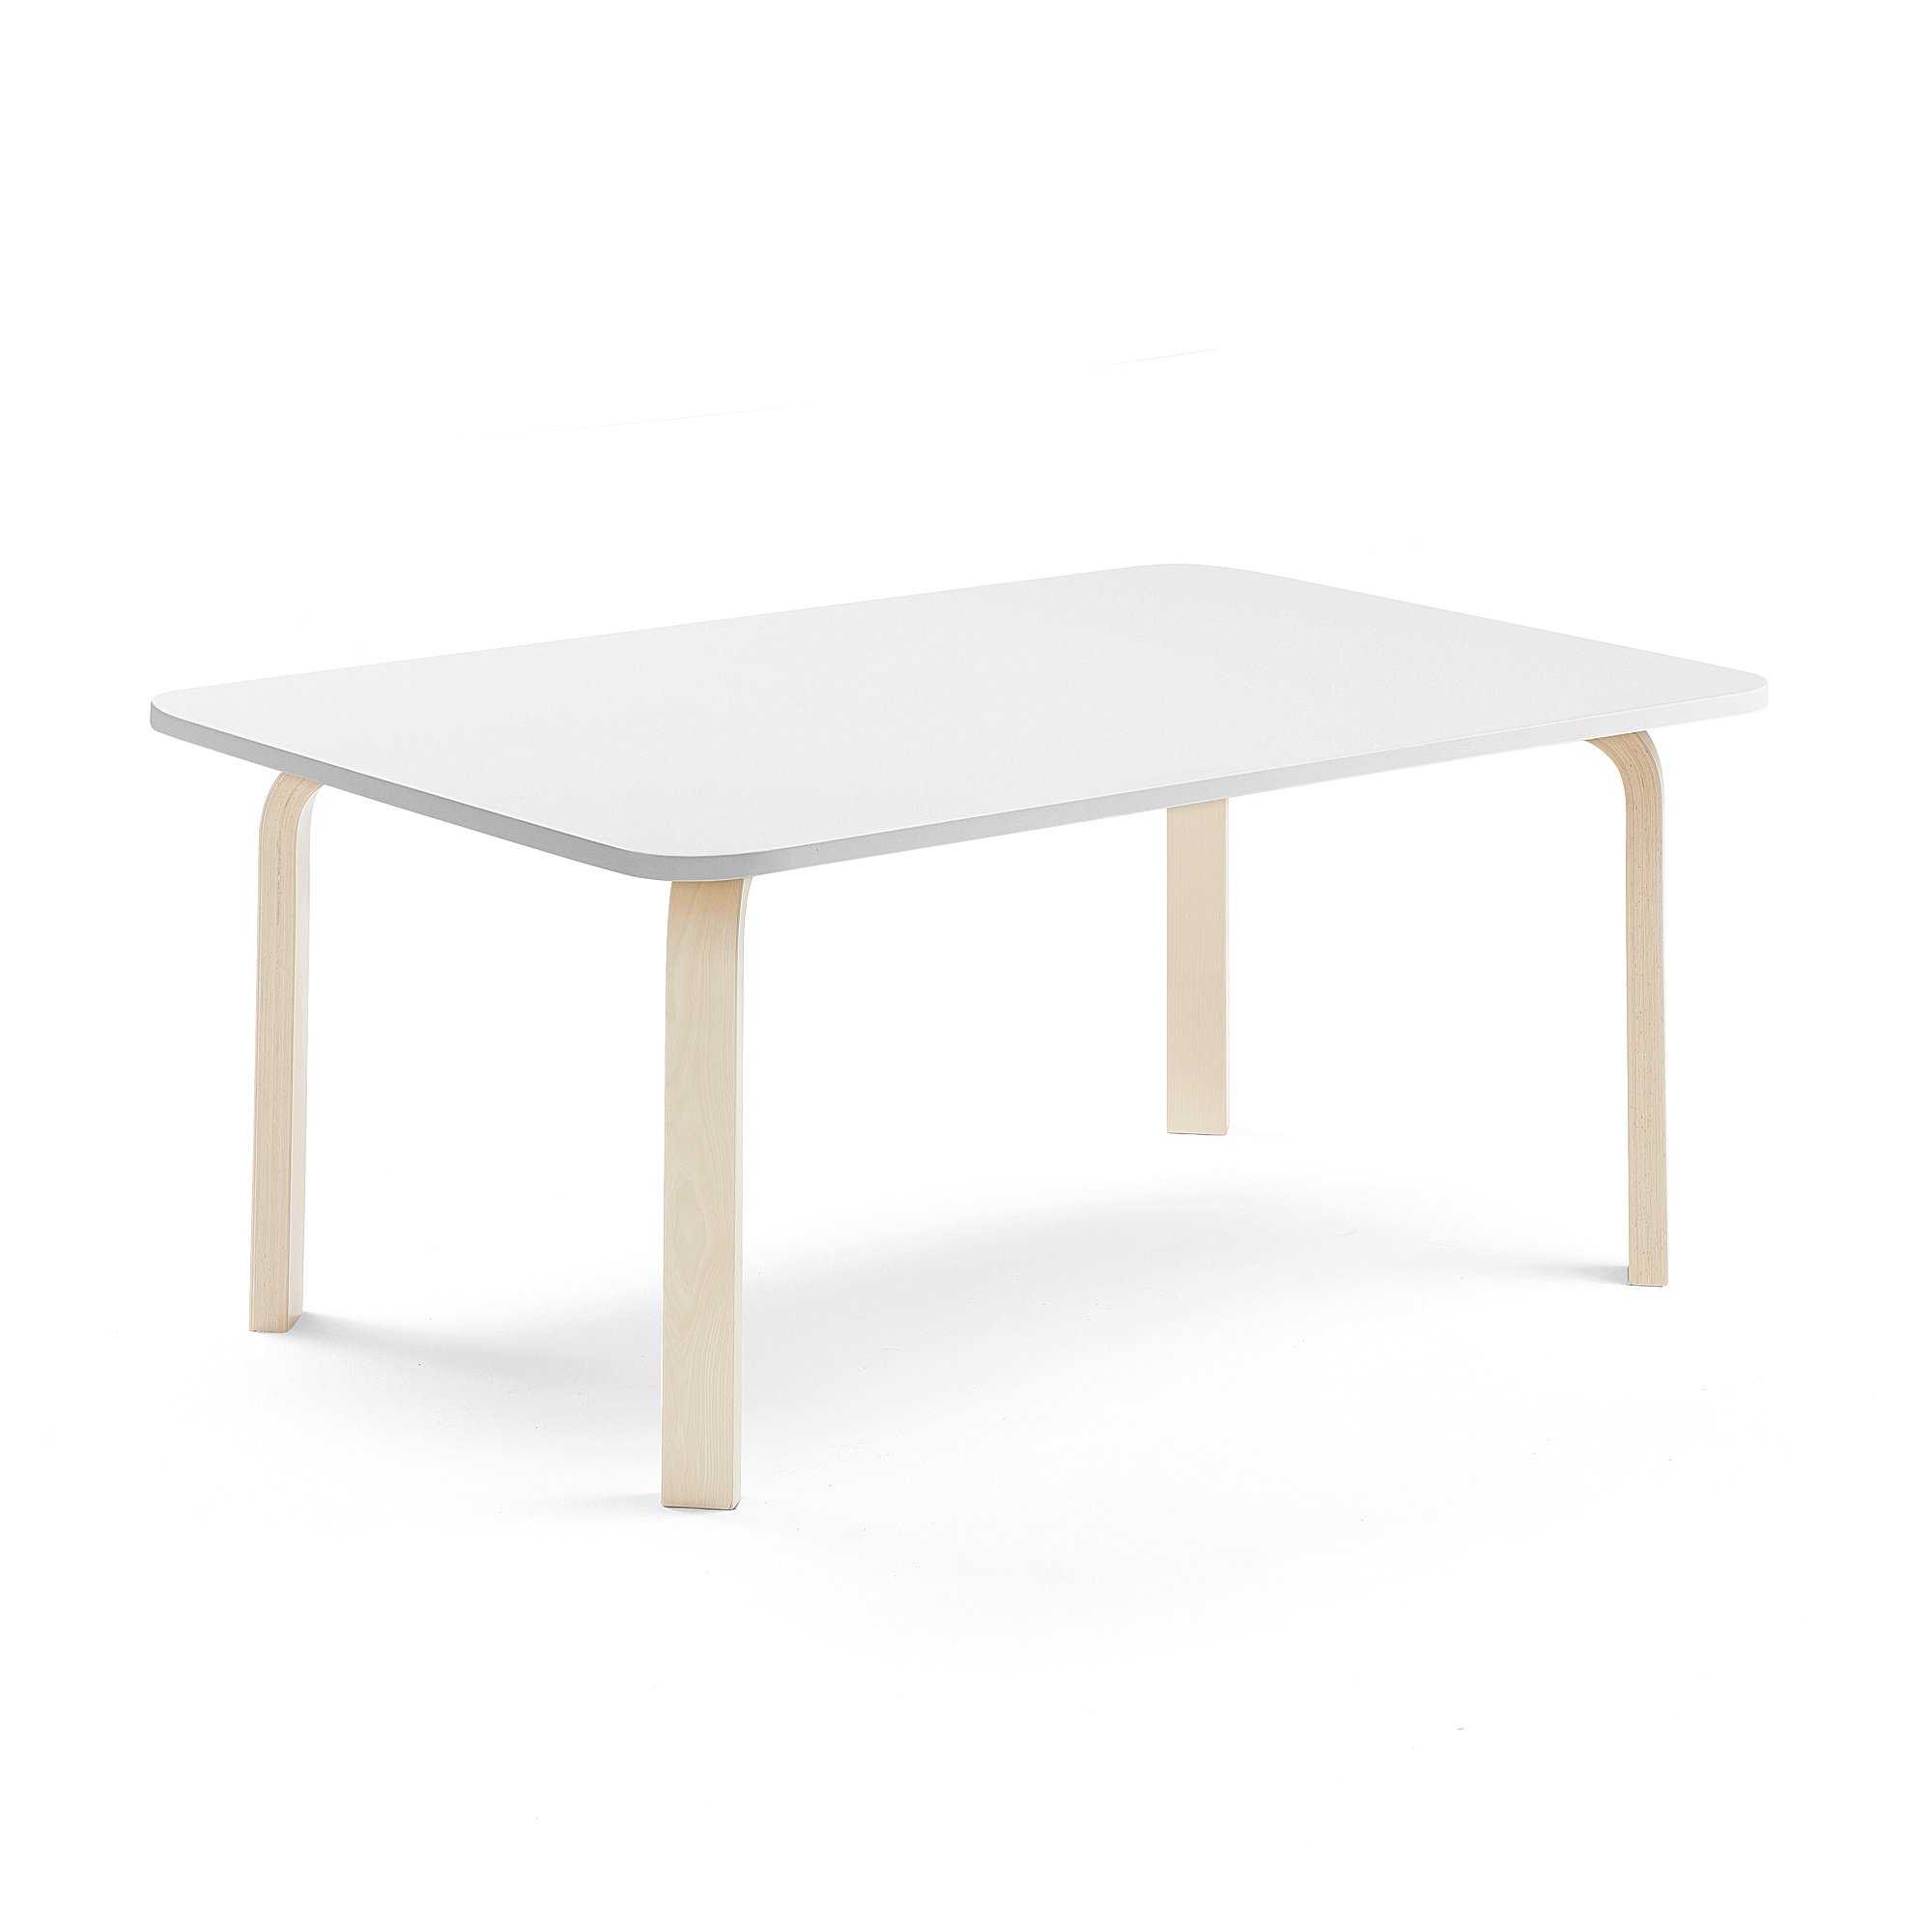 Stůl ELTON, 1400x700x530 mm, bříza, akustická HPL deska, bílá